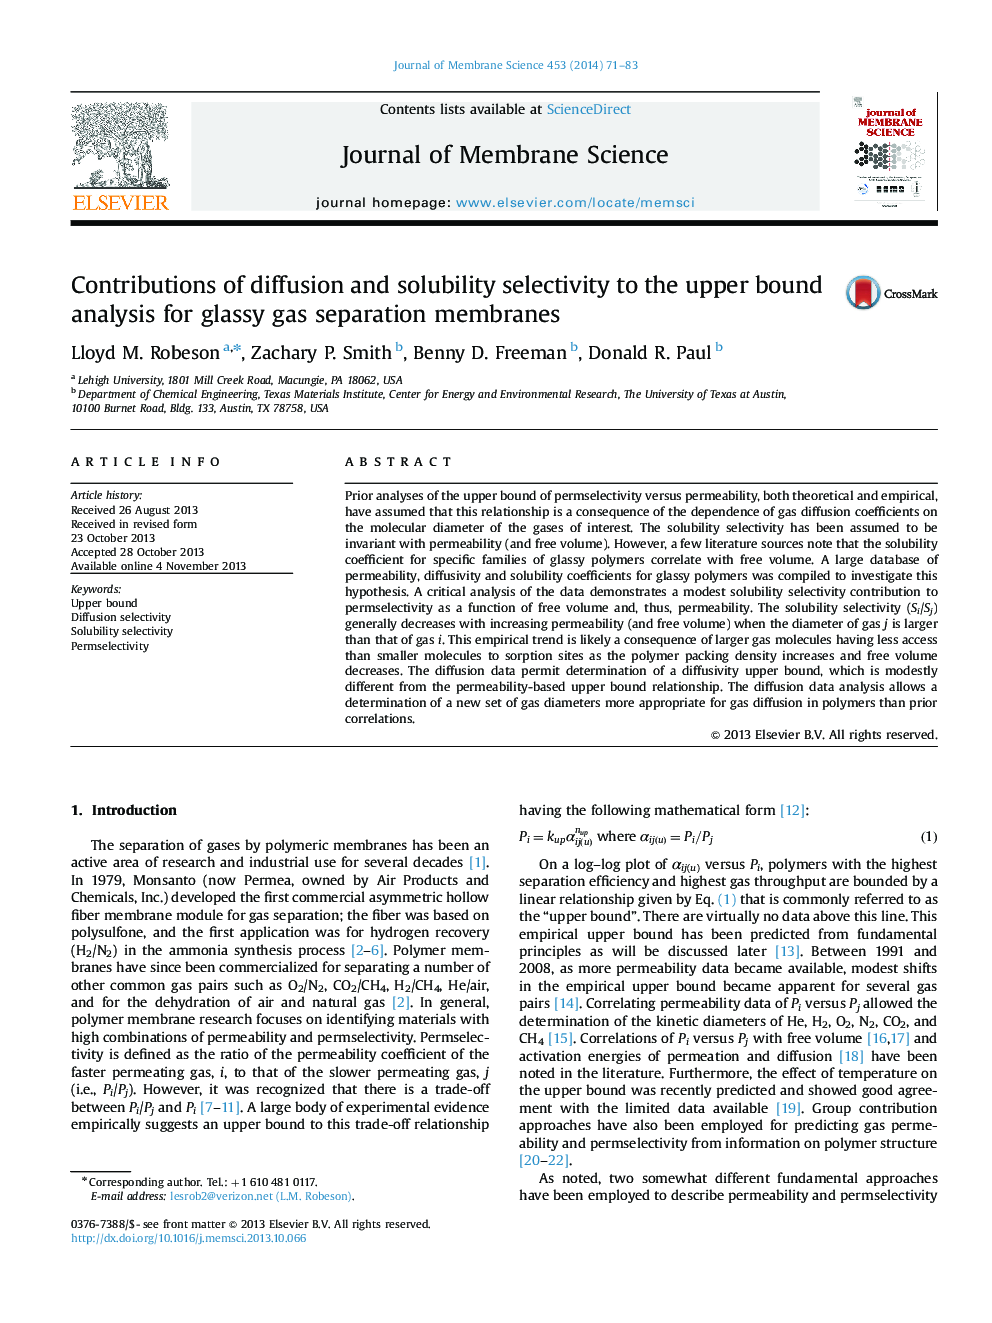 مقالات انتشار و انتخاب پذیری حلال به تجزیه و تحلیل بالایی بالا برای غشاهای جداسازی گاز شیشه ای 